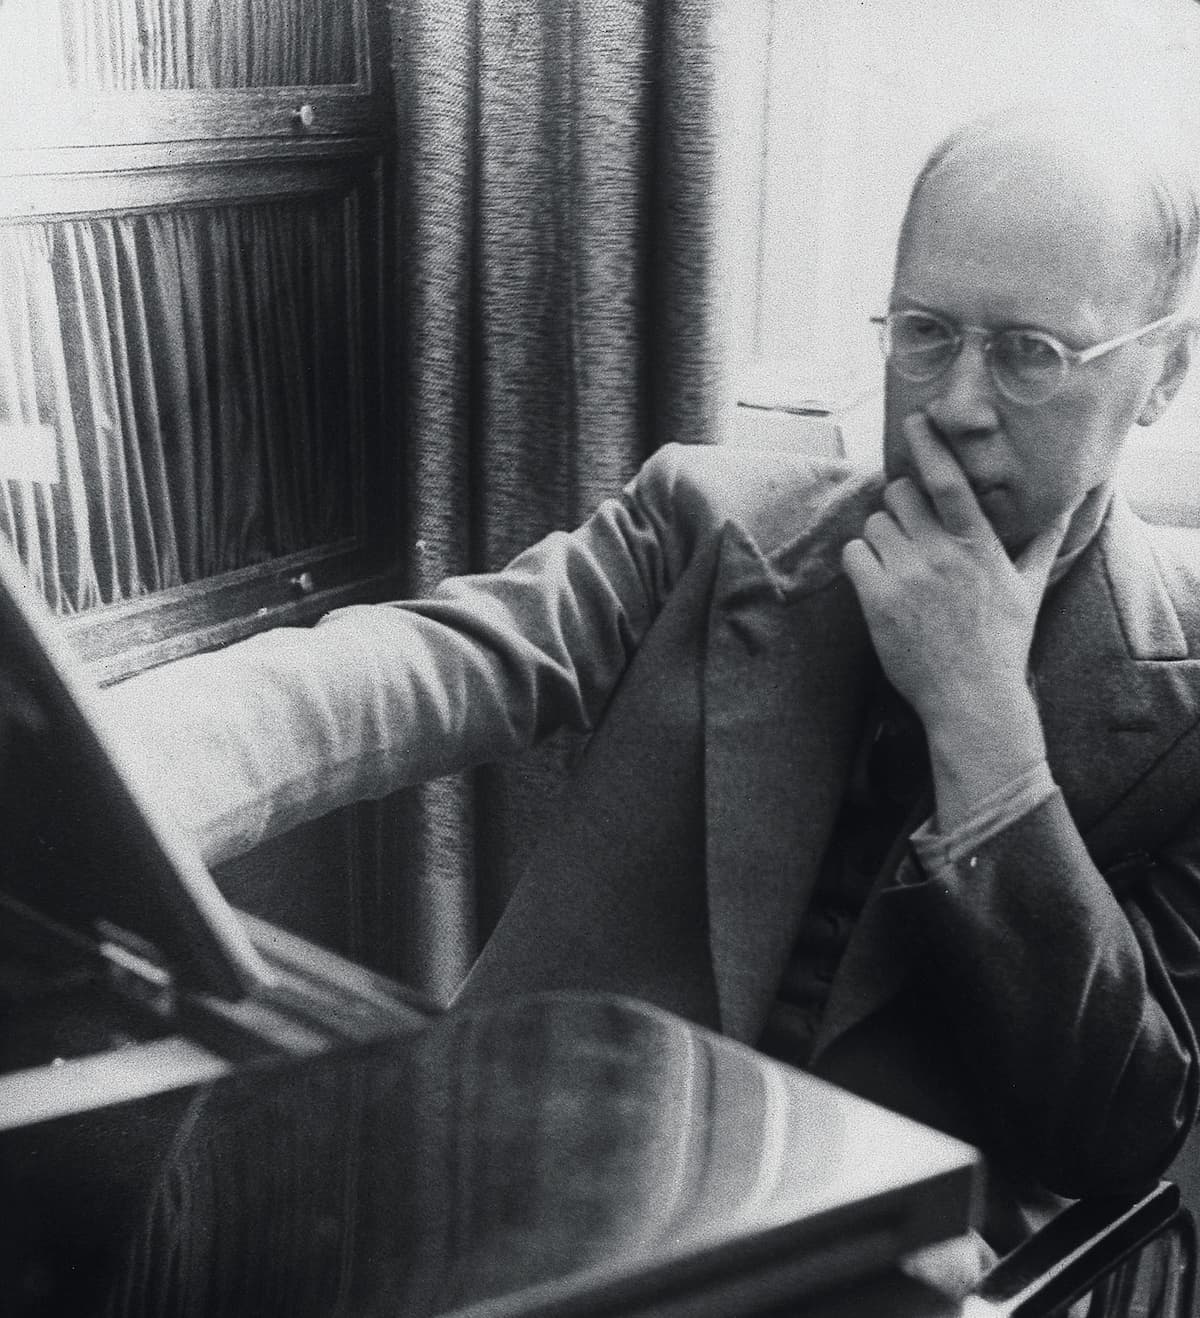 Sergei Prokofiev composing